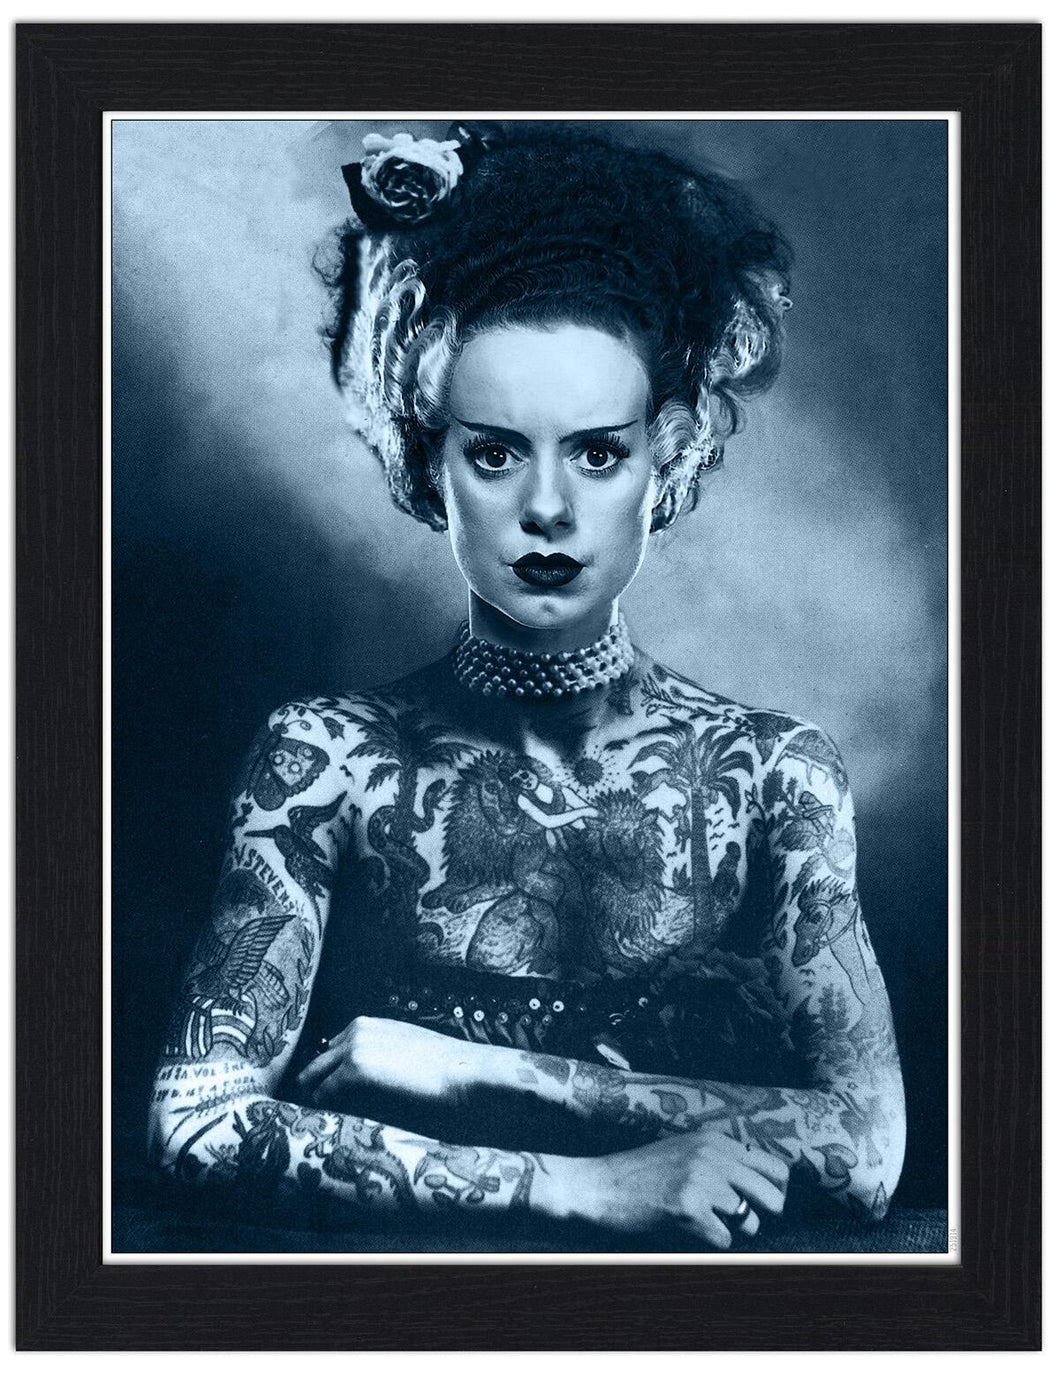 Tattooed Bride Of Frankenstein 30x40 Unframed Art Print